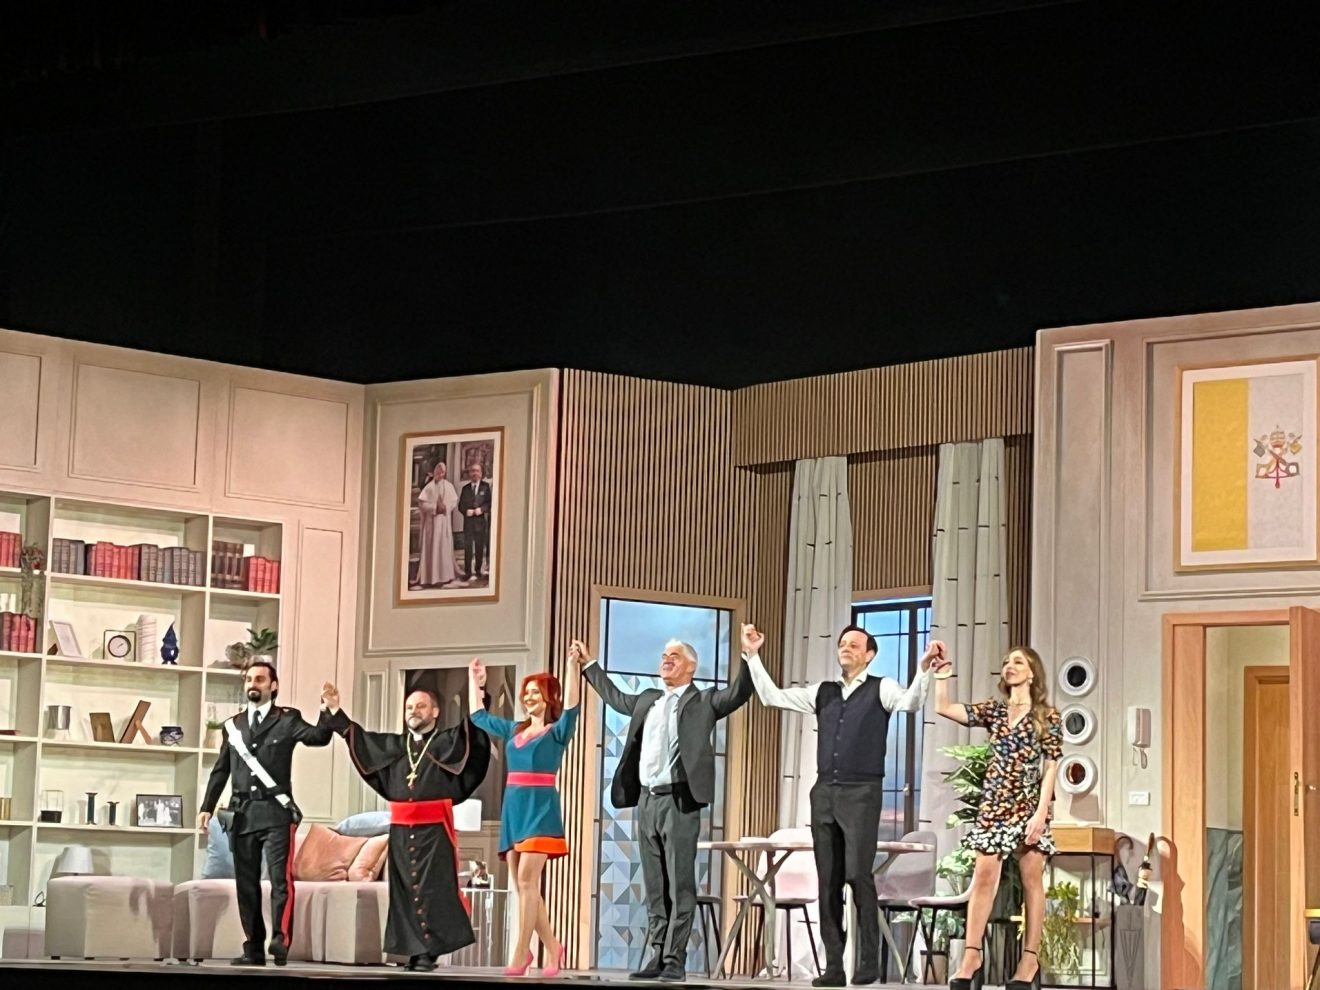 Al Teatro Augusteo di Napoli tanti applausi e risate per “L’arte della truffa” con Biagio Izzo La Recensione.